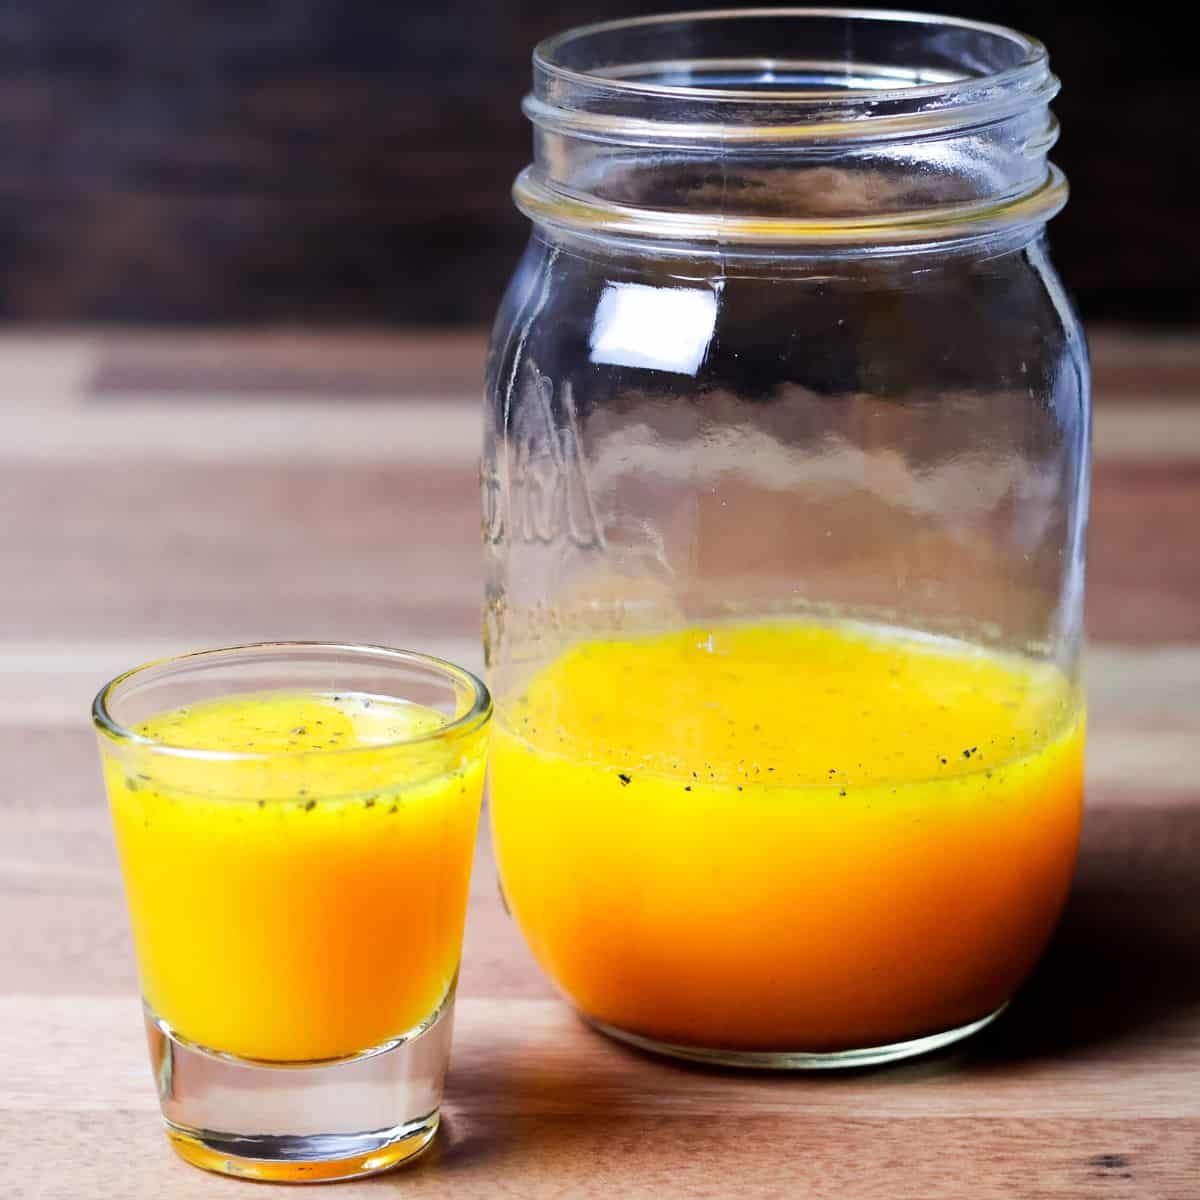 A small glass filled with bright yellow anti-inflammatory juice alongside a larger mason jar